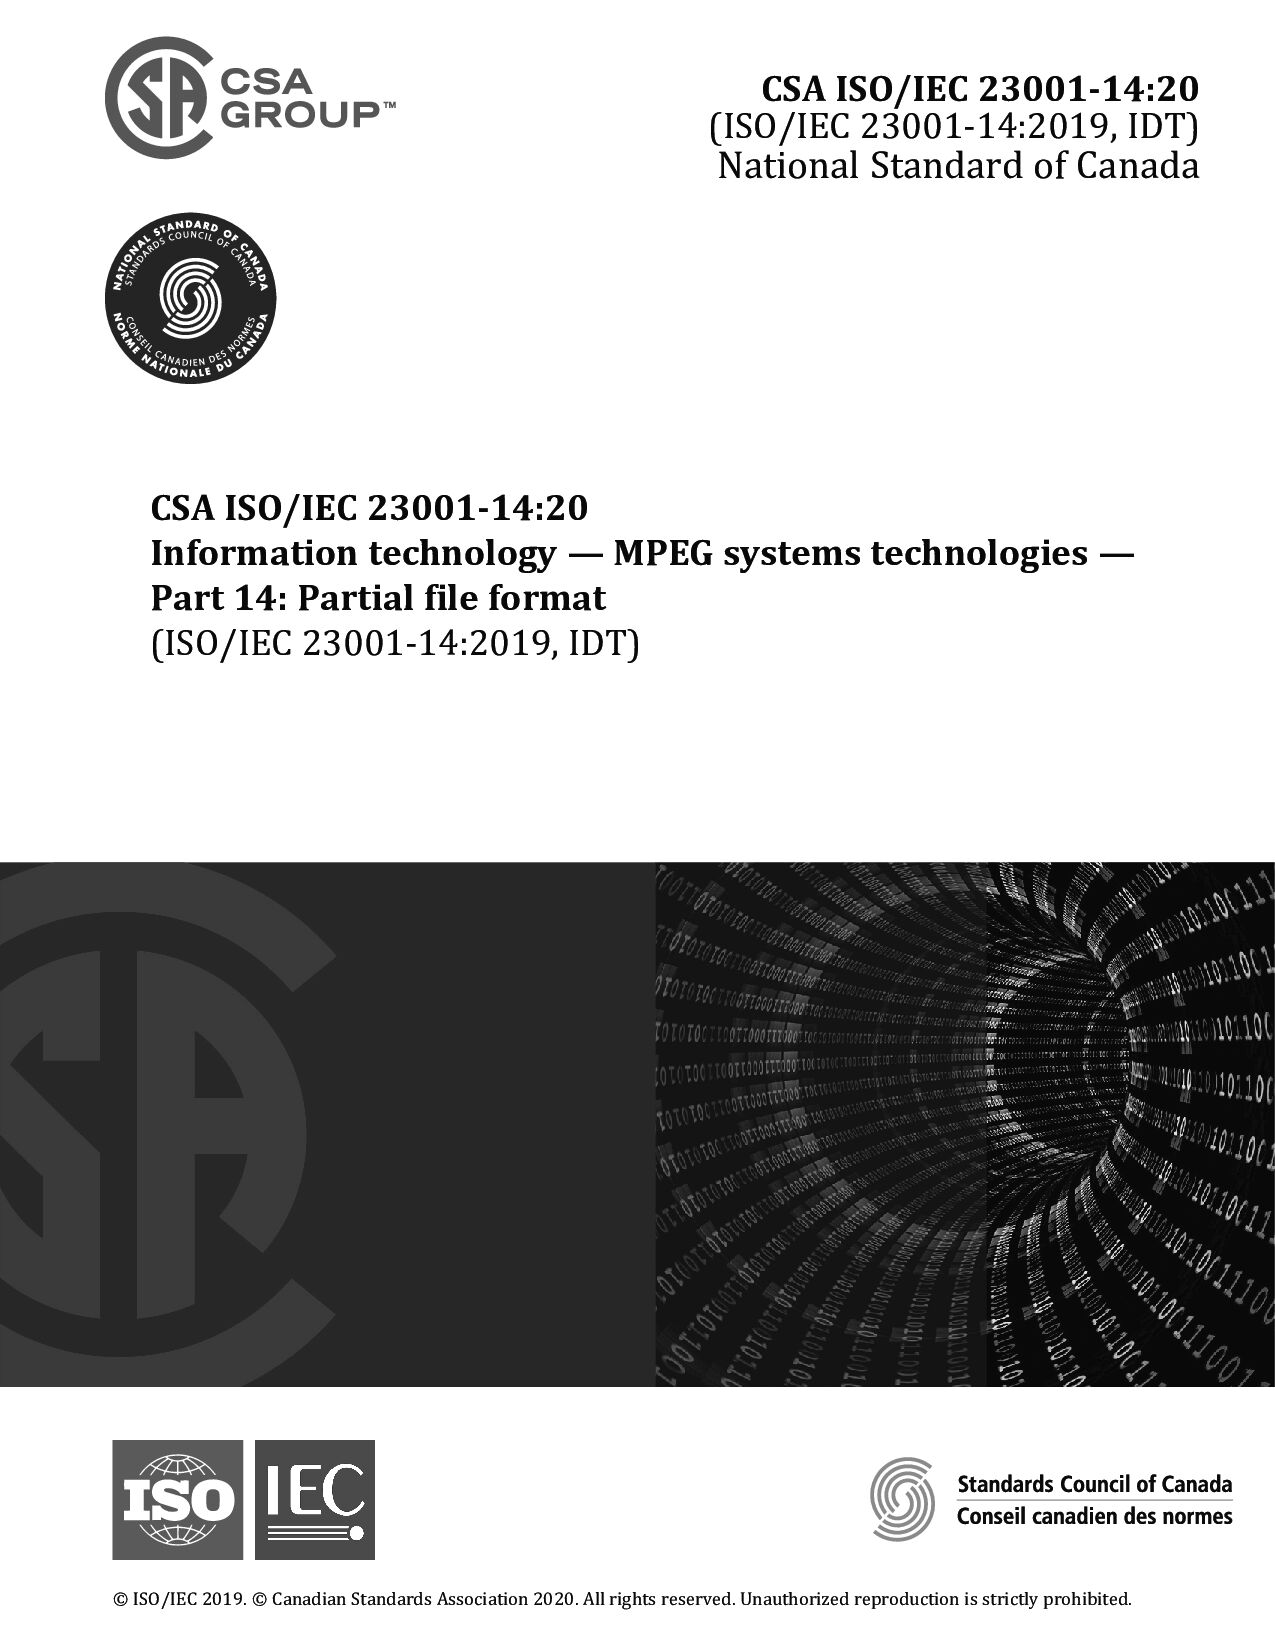 CSA ISO/IEC 23001-14:2020封面图